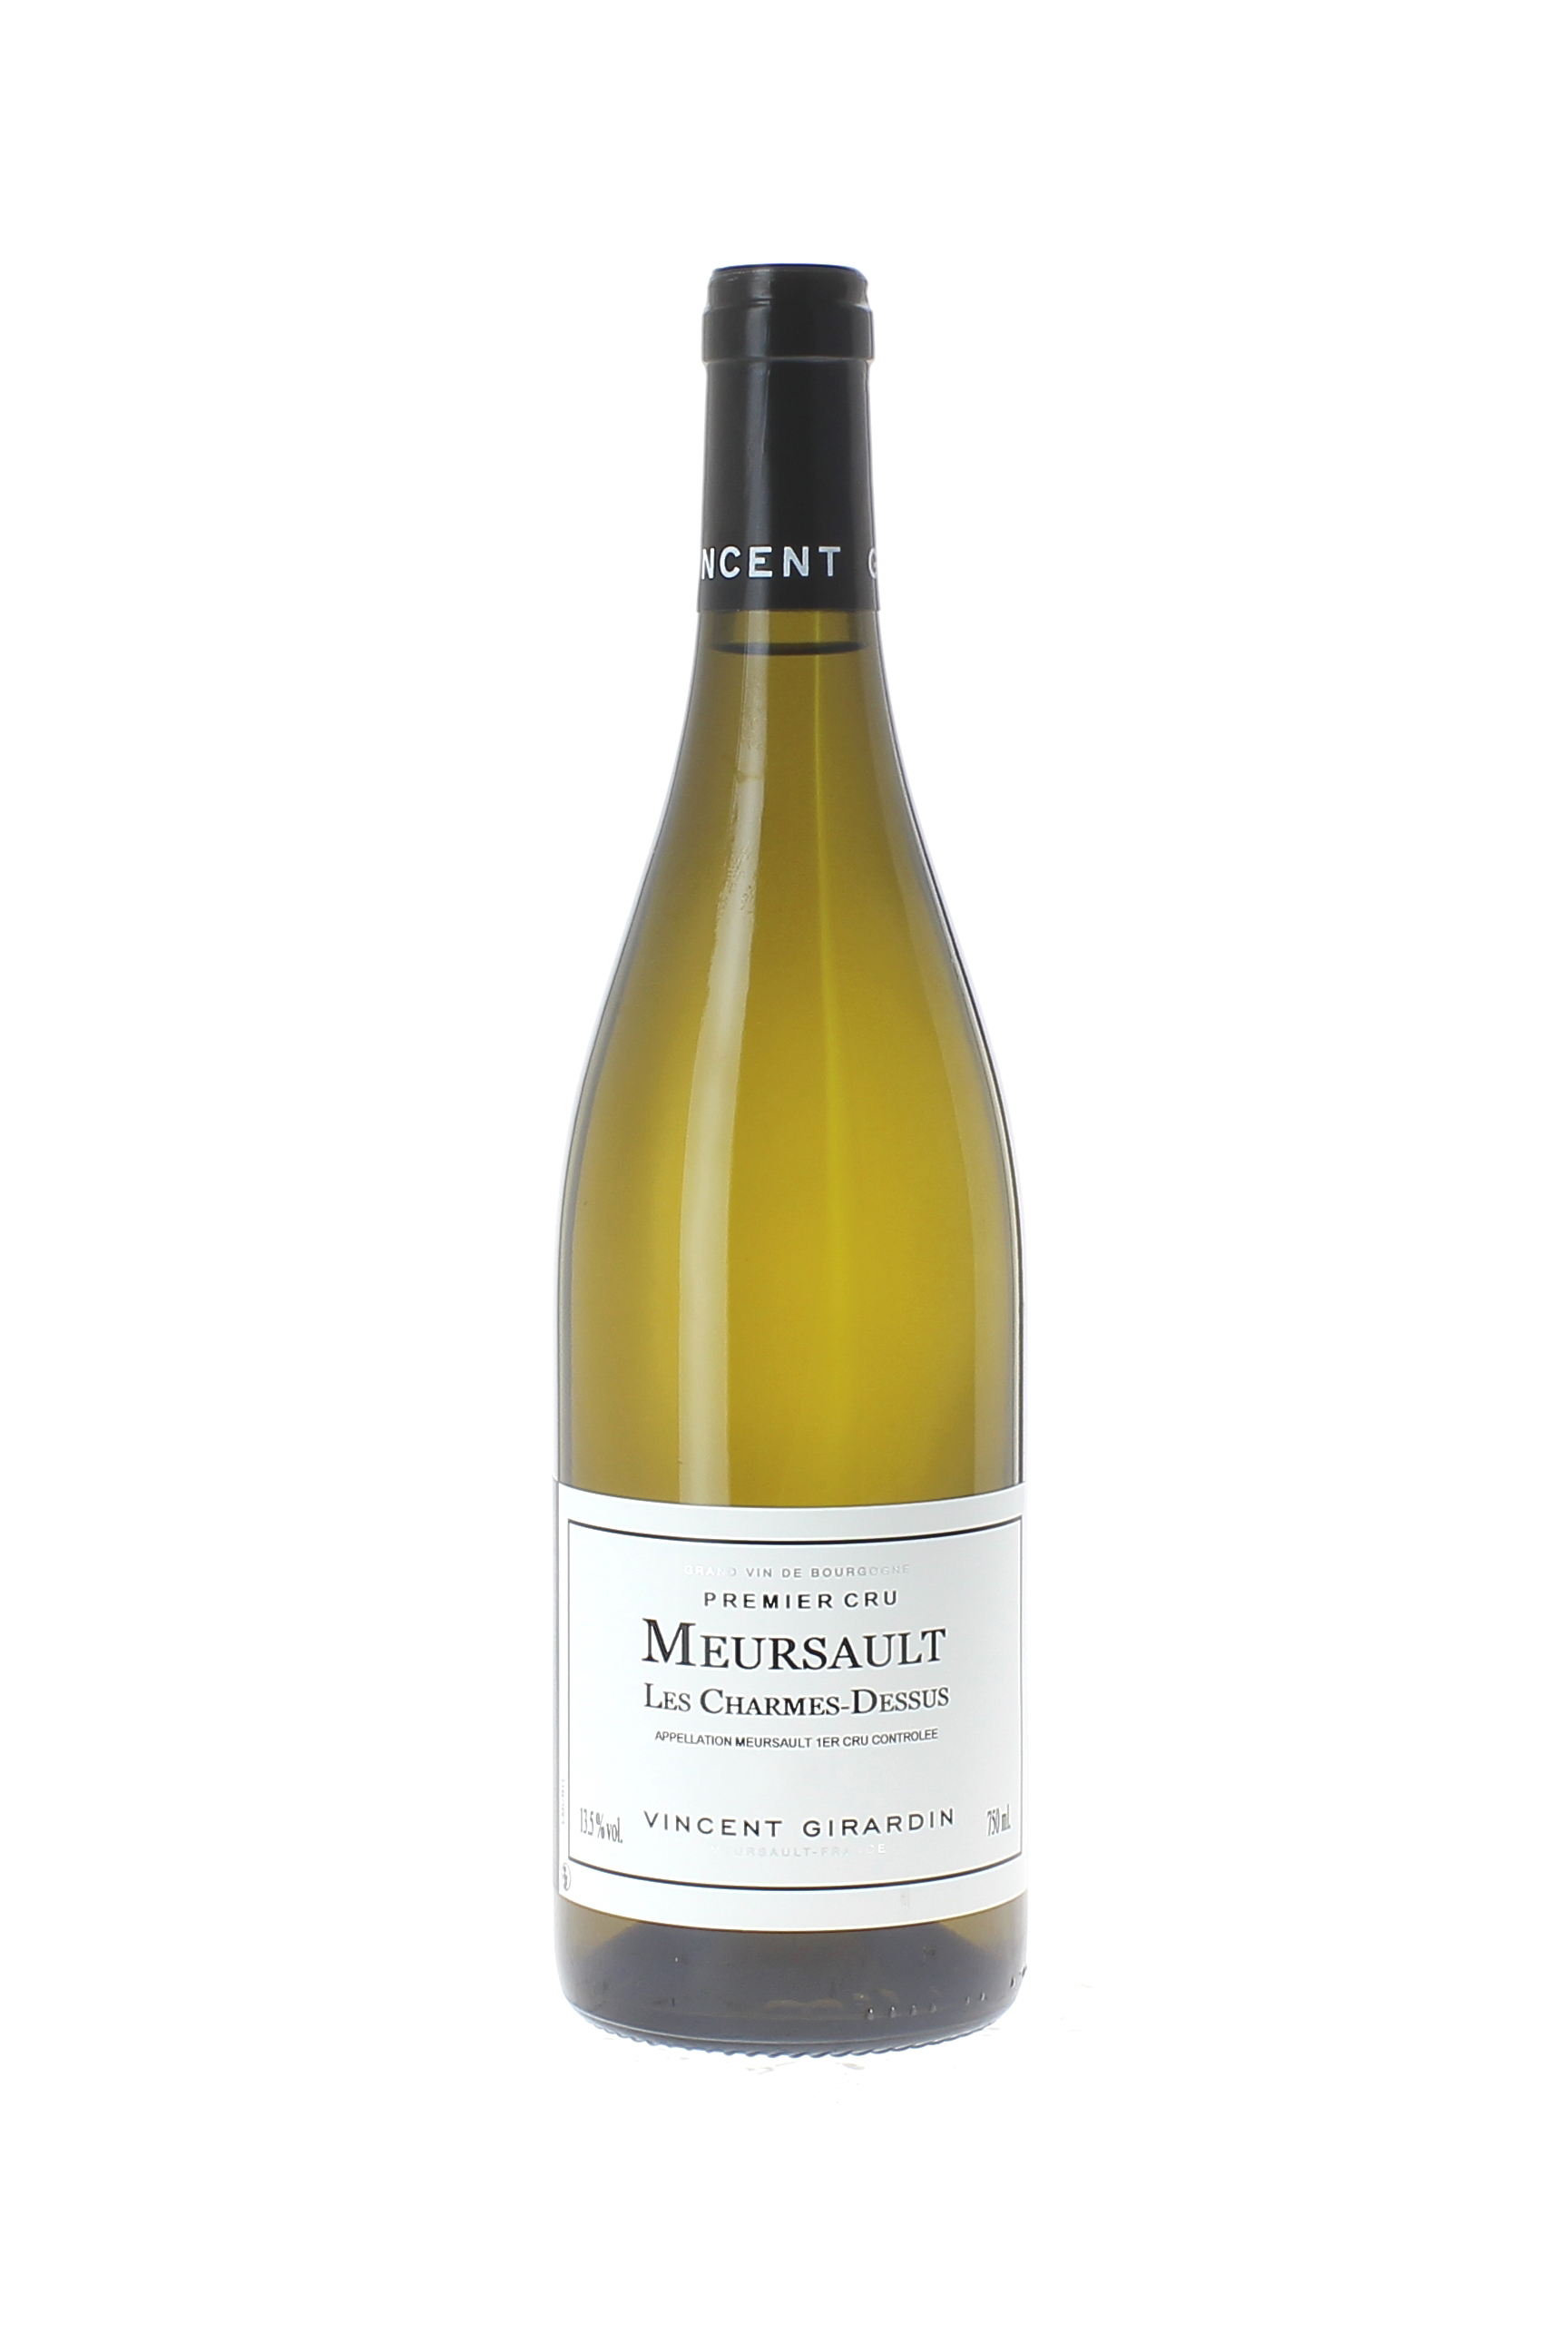 Meursault 1er cru les charmes-dessus 2015 Domaine GIRARDIN Vincent, Bourgogne blanc